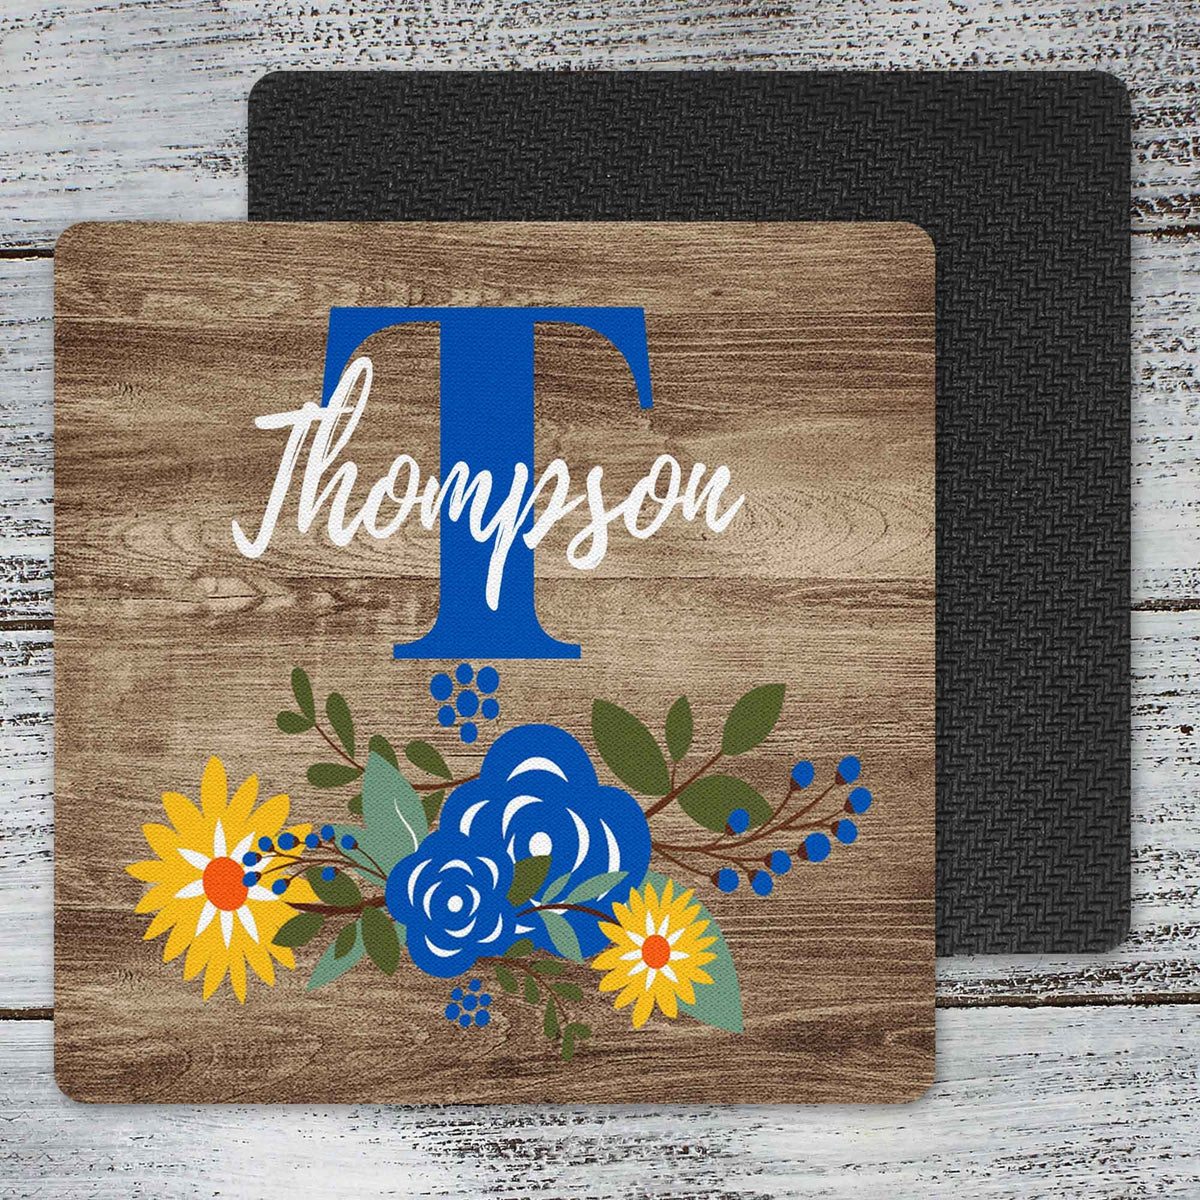 Personalized Coasters | Custom Stone Coaster Set | Faux Wood Sunflower | Set of 4